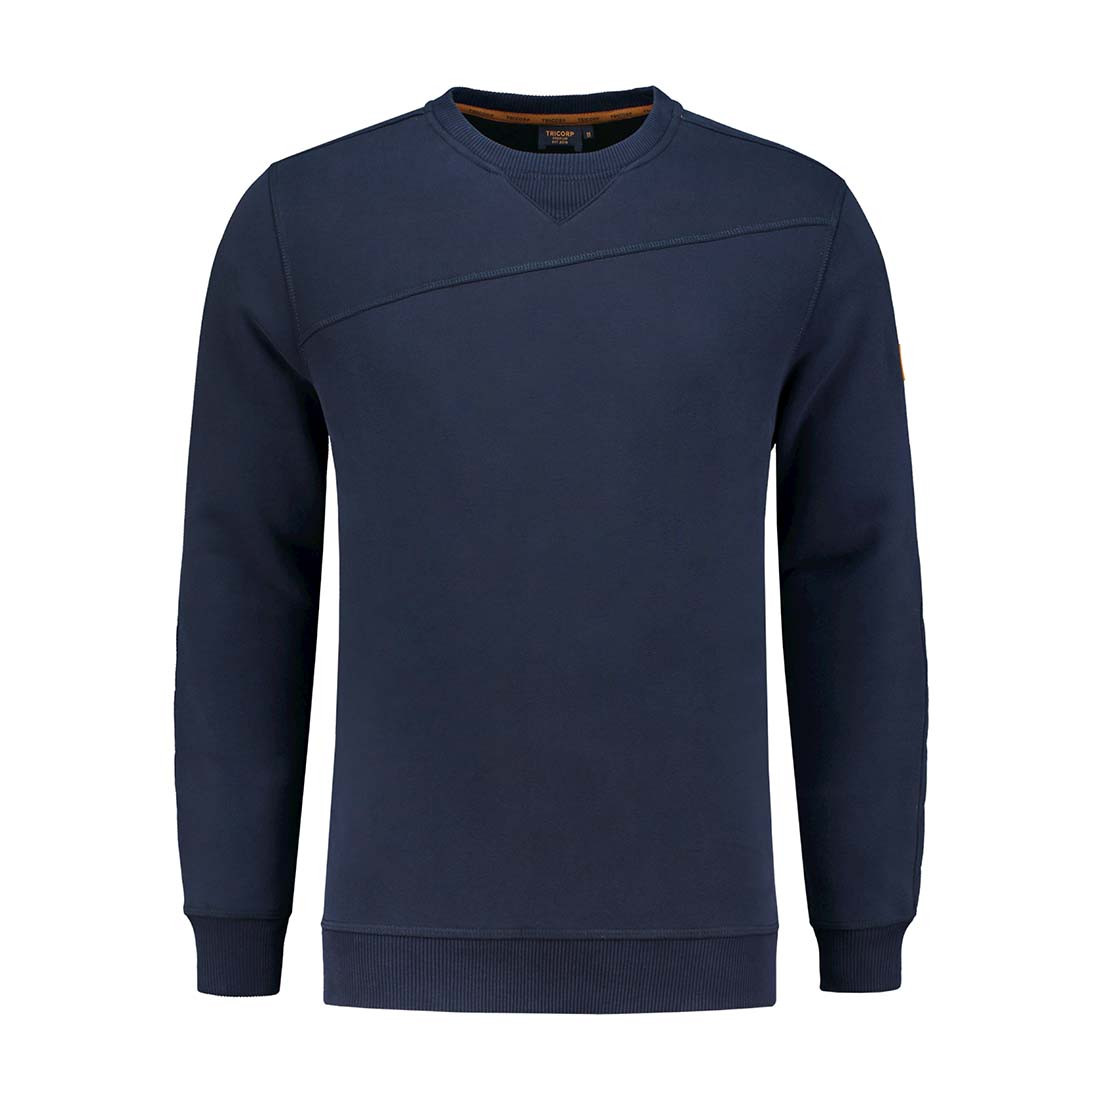 PREMIUM Men's Sweatshirt - Safetywear